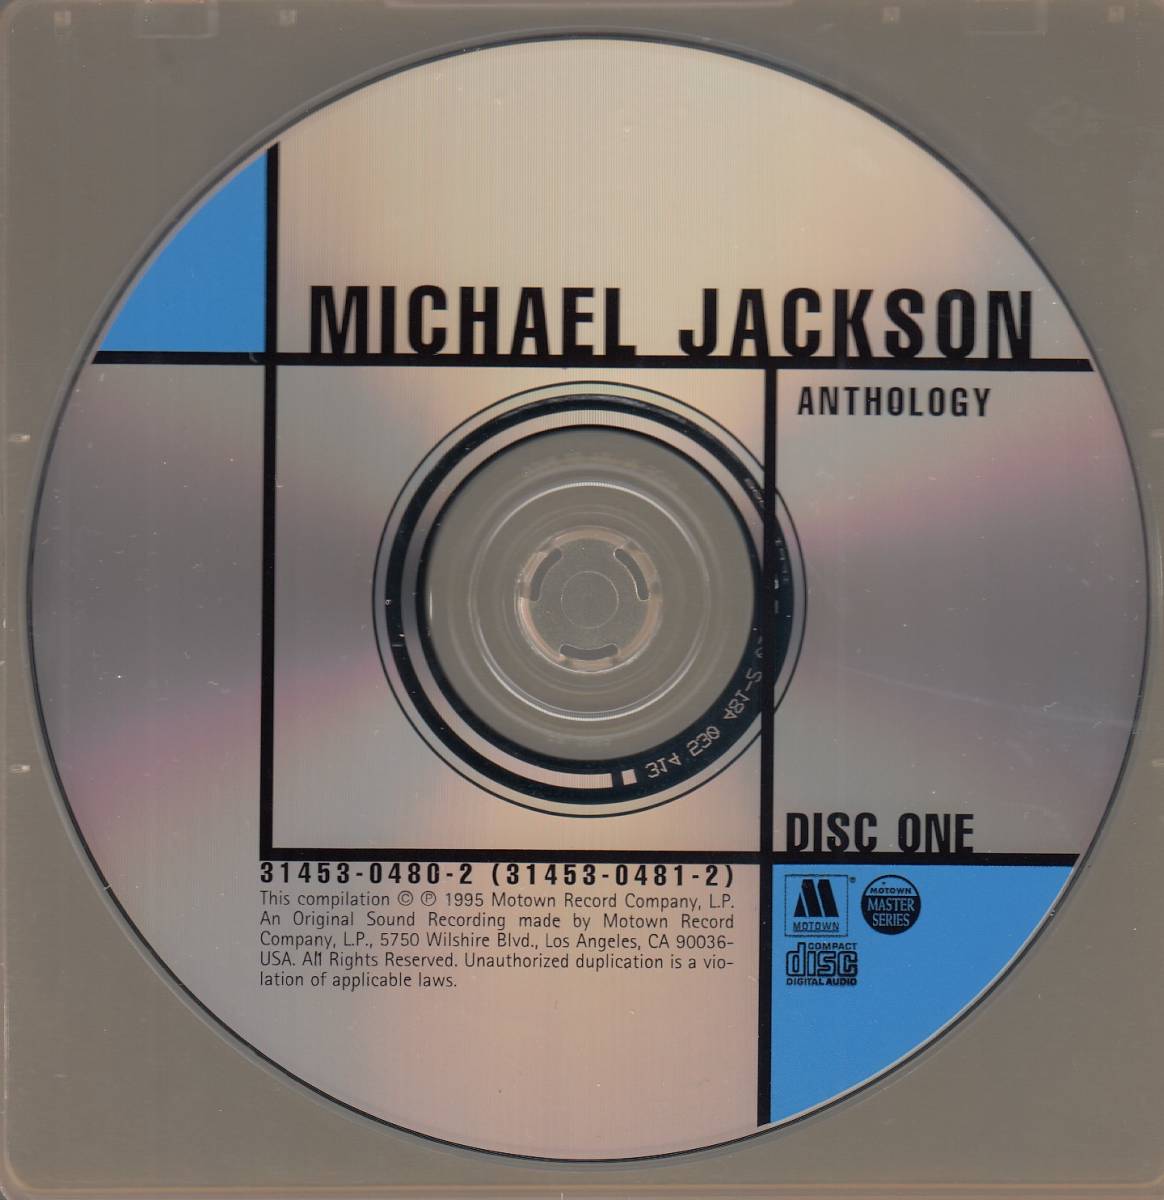  транспорт Michael Jackson The Best Of Michael Jackson 2CD* стандарт номер #3145304802* бесплатная доставка # быстрое решение * переговоры иметь 